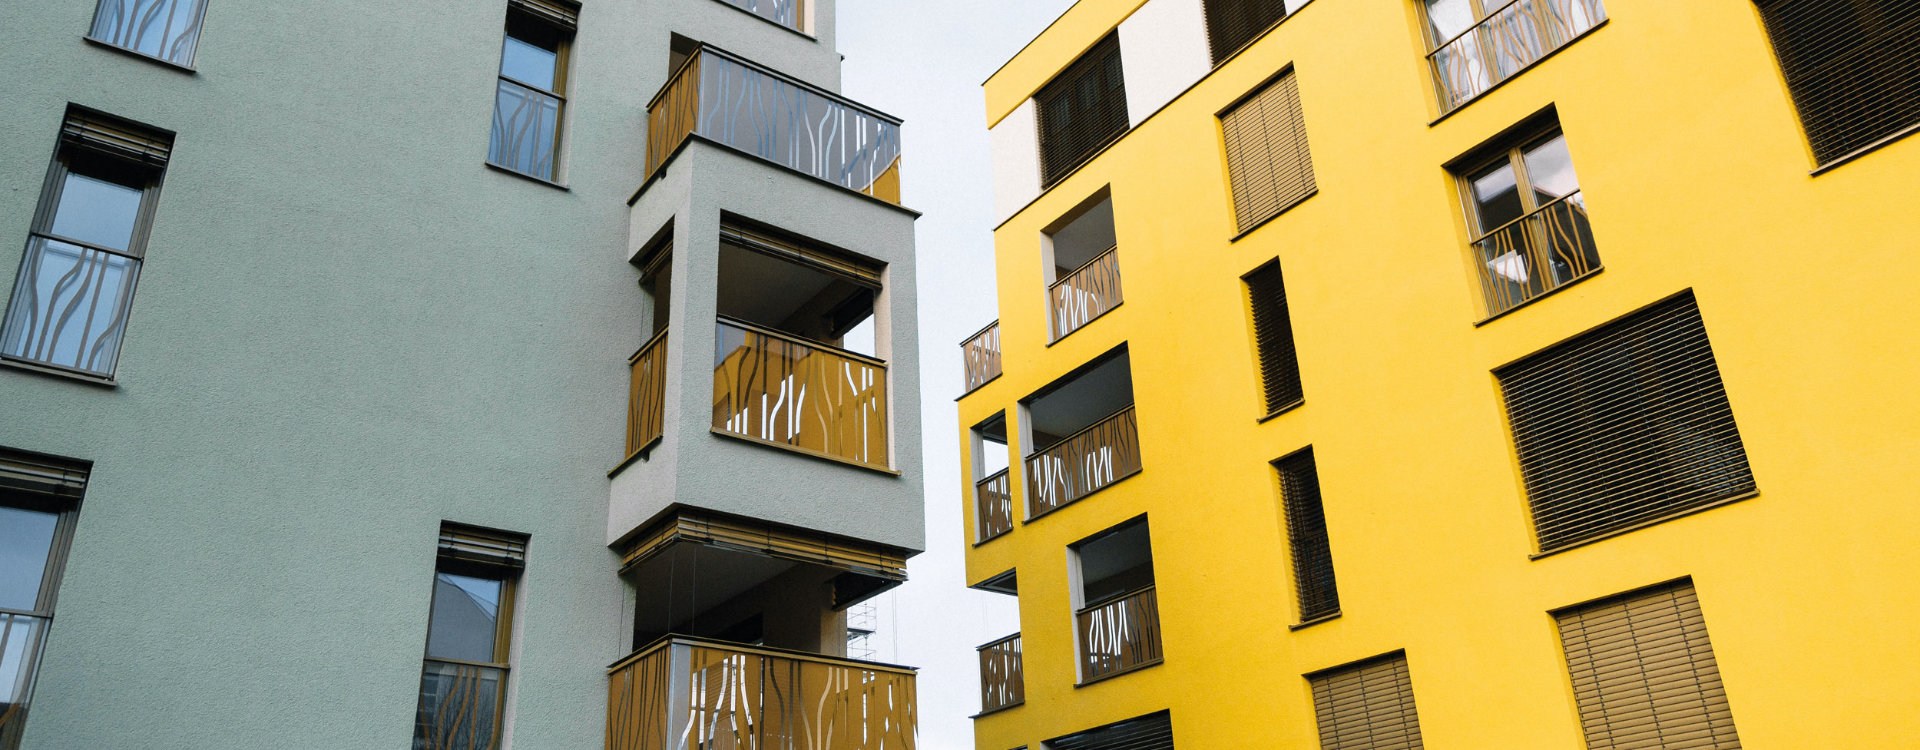 Mehrfamilienhaus mit nachhaltigen Ziegeln von Leipfinger Bader erbaut